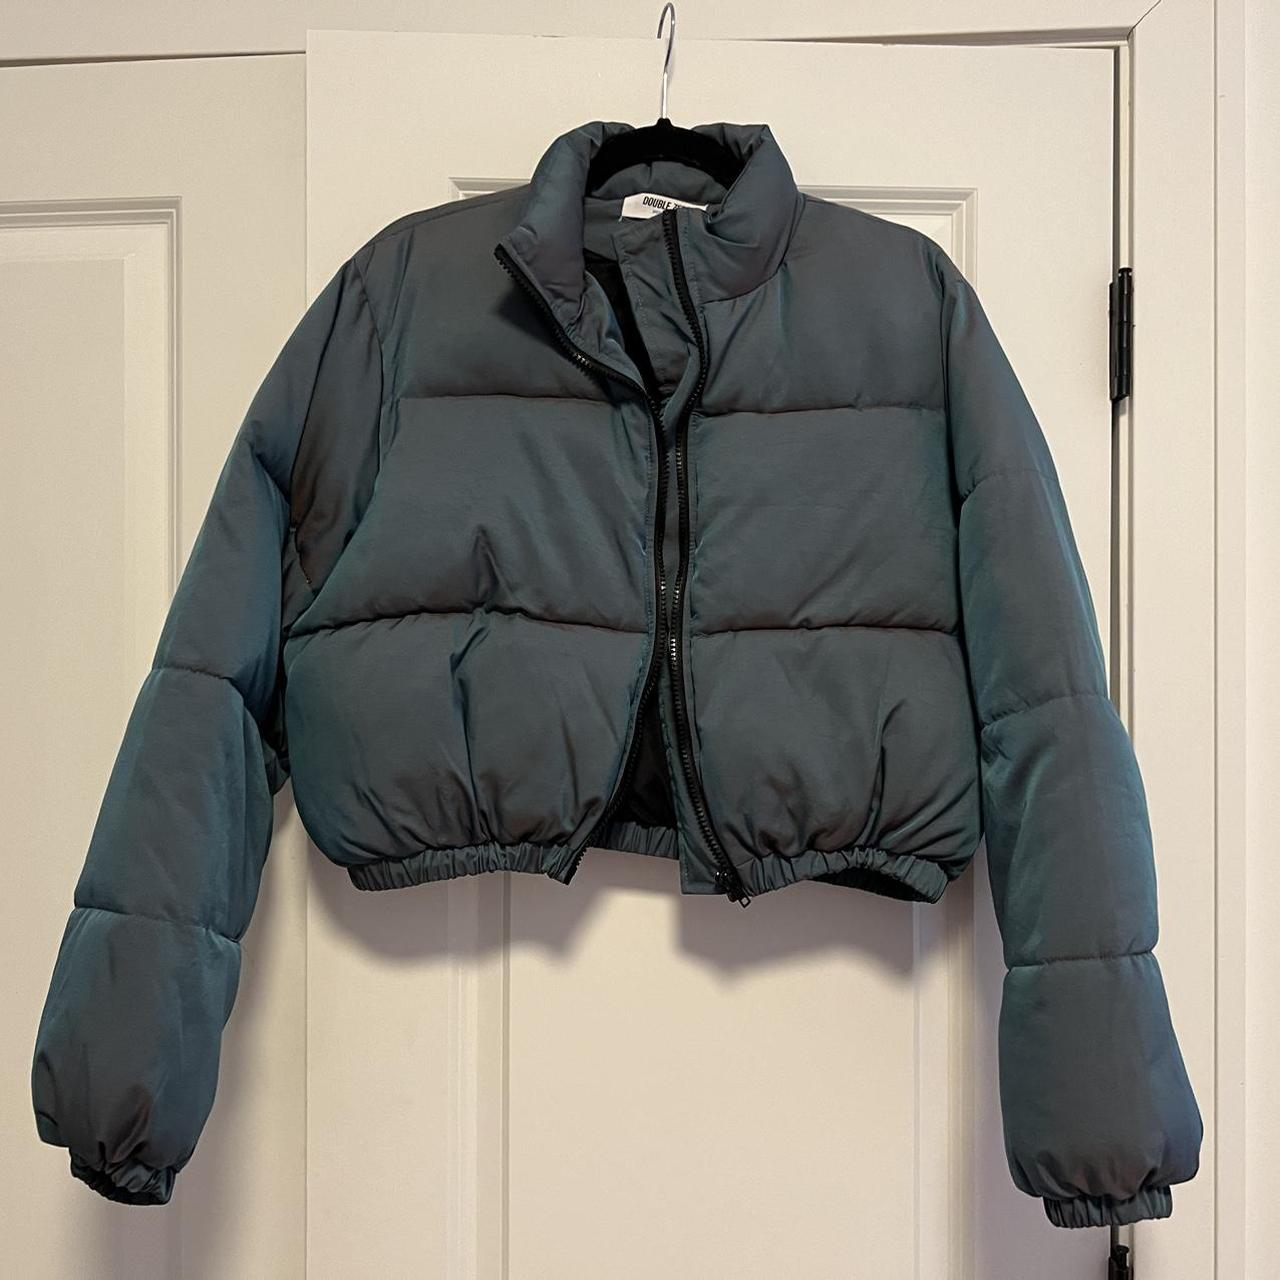 Double Zero Cropped puffer jacket (warm)... - Depop